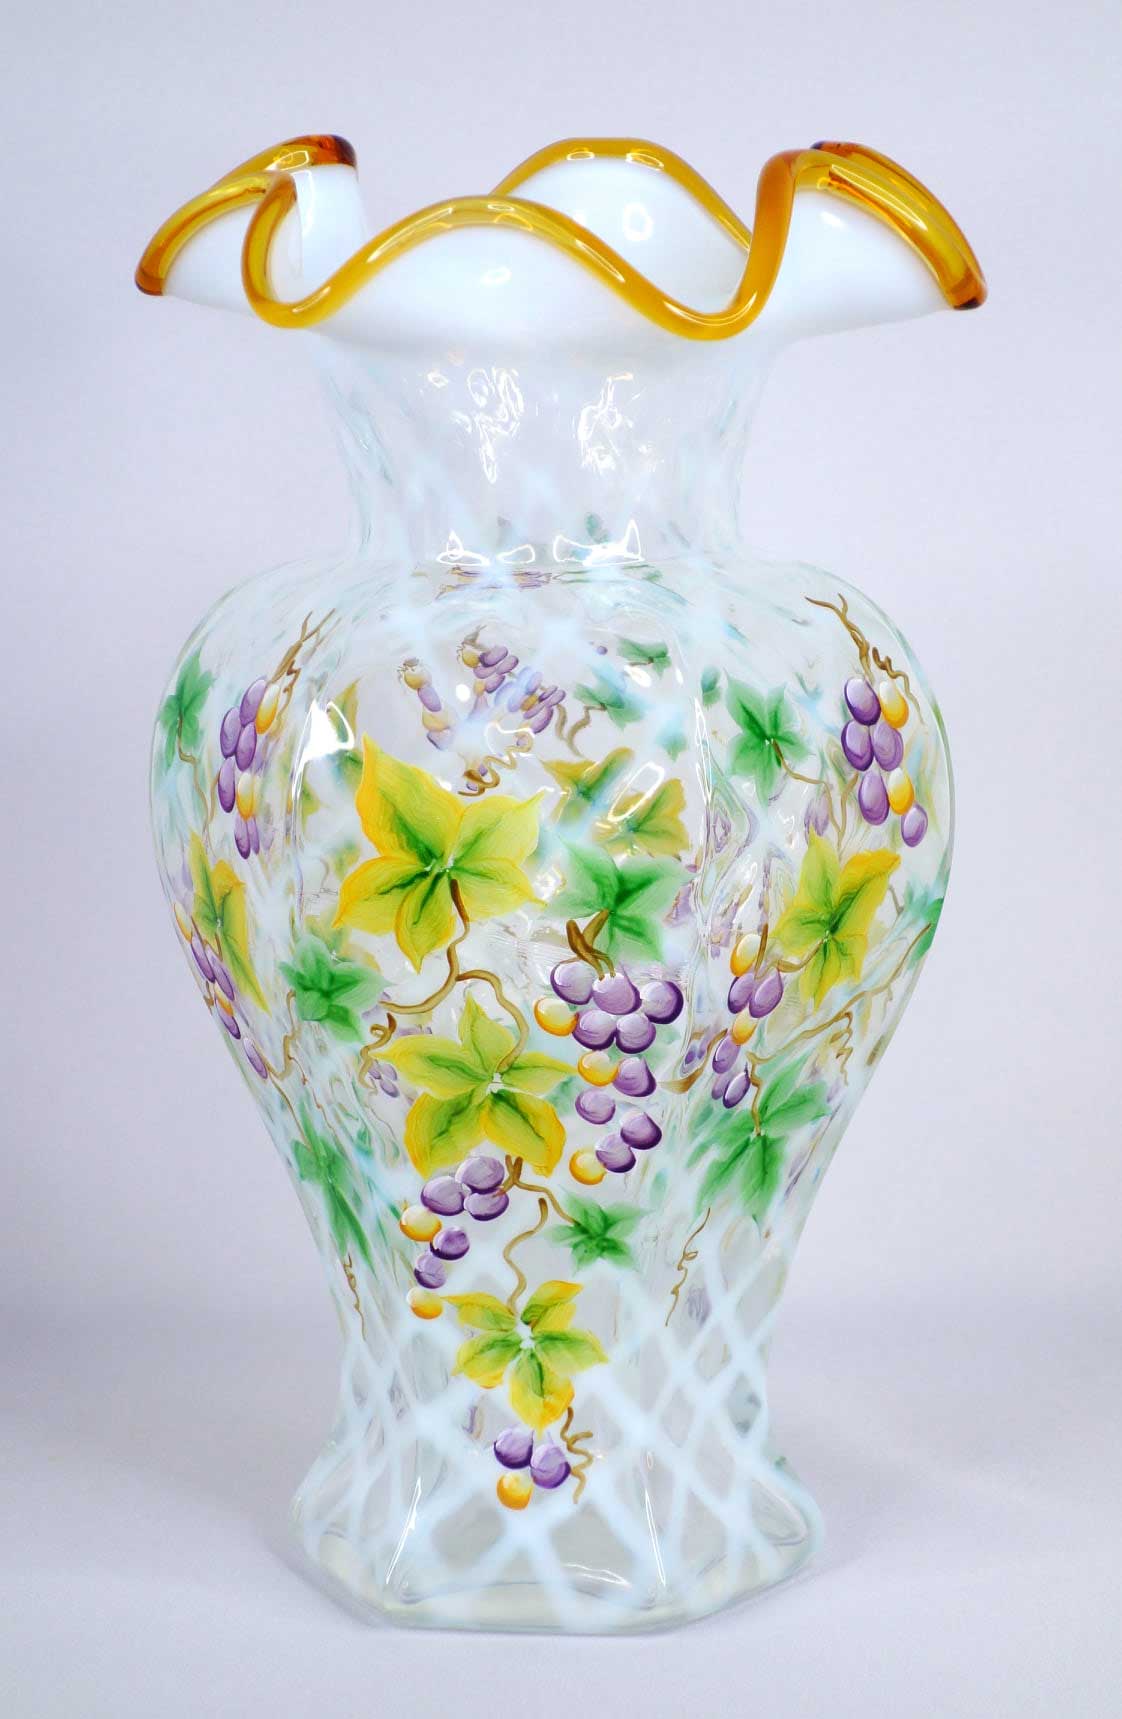 Vase from online seller